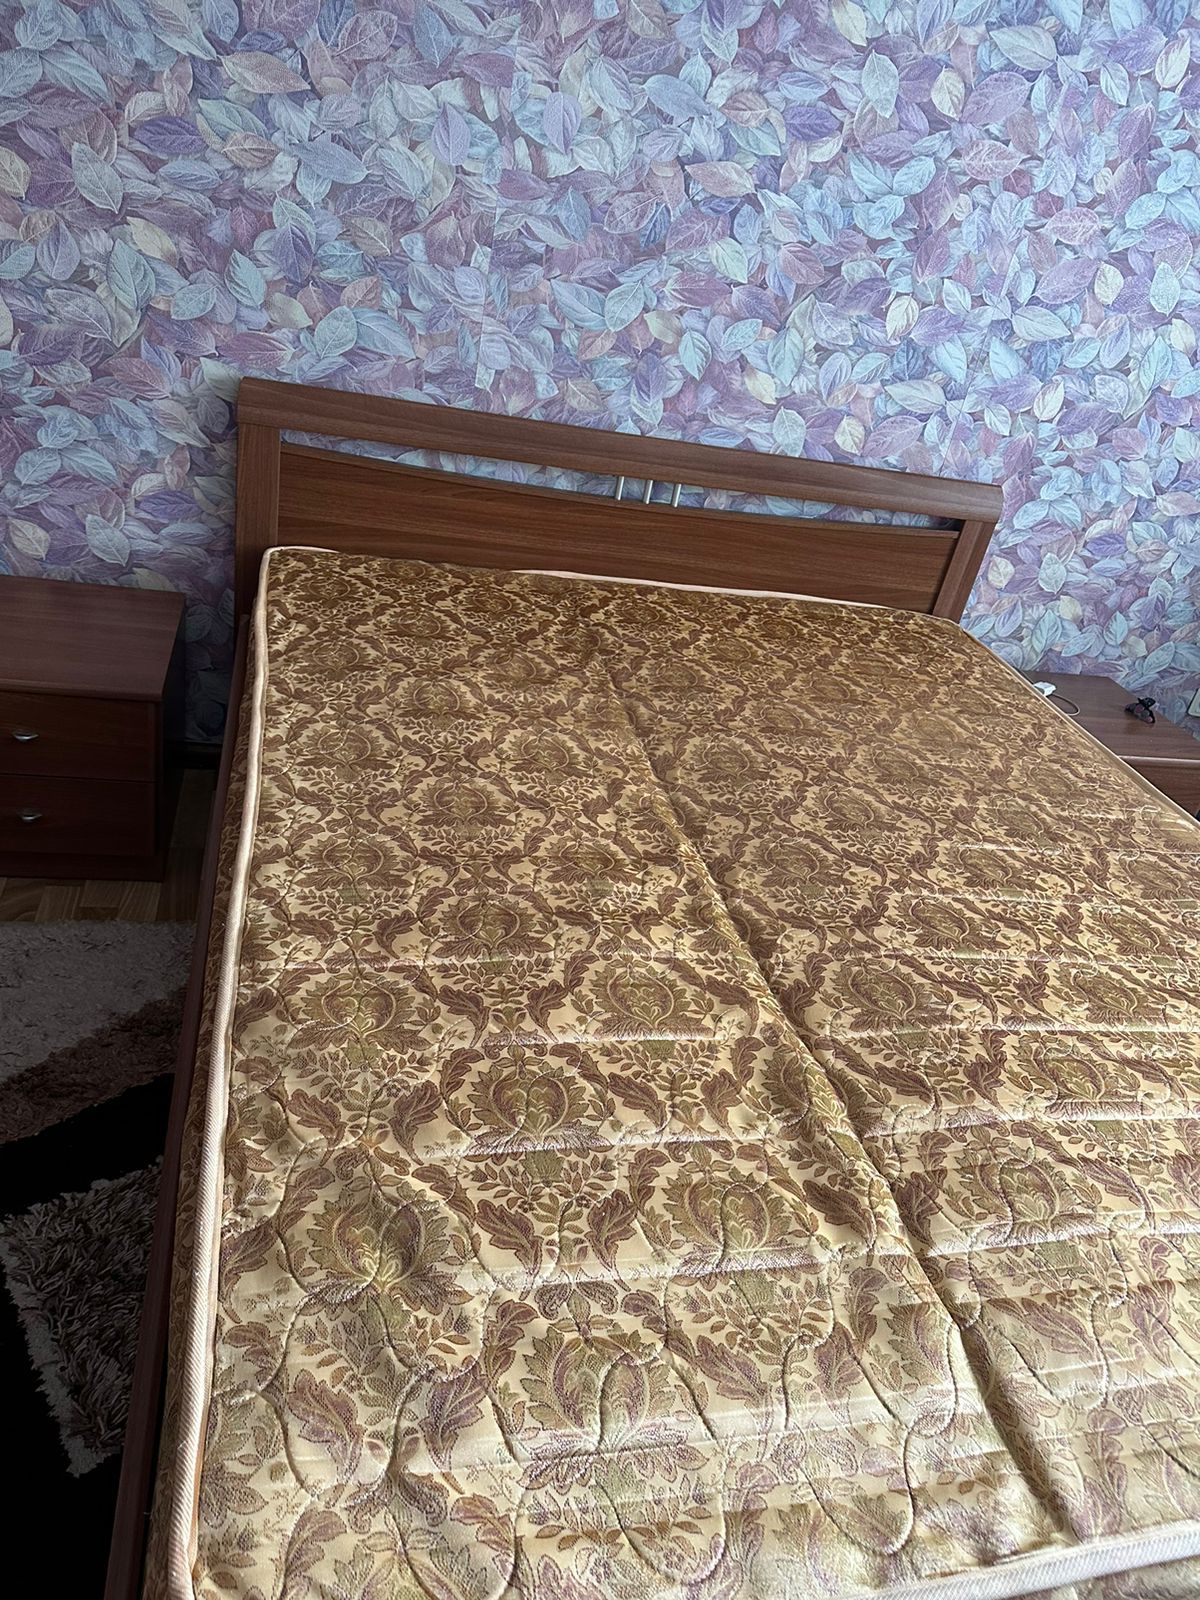 2-хспальнаяя кровать за 80000тг